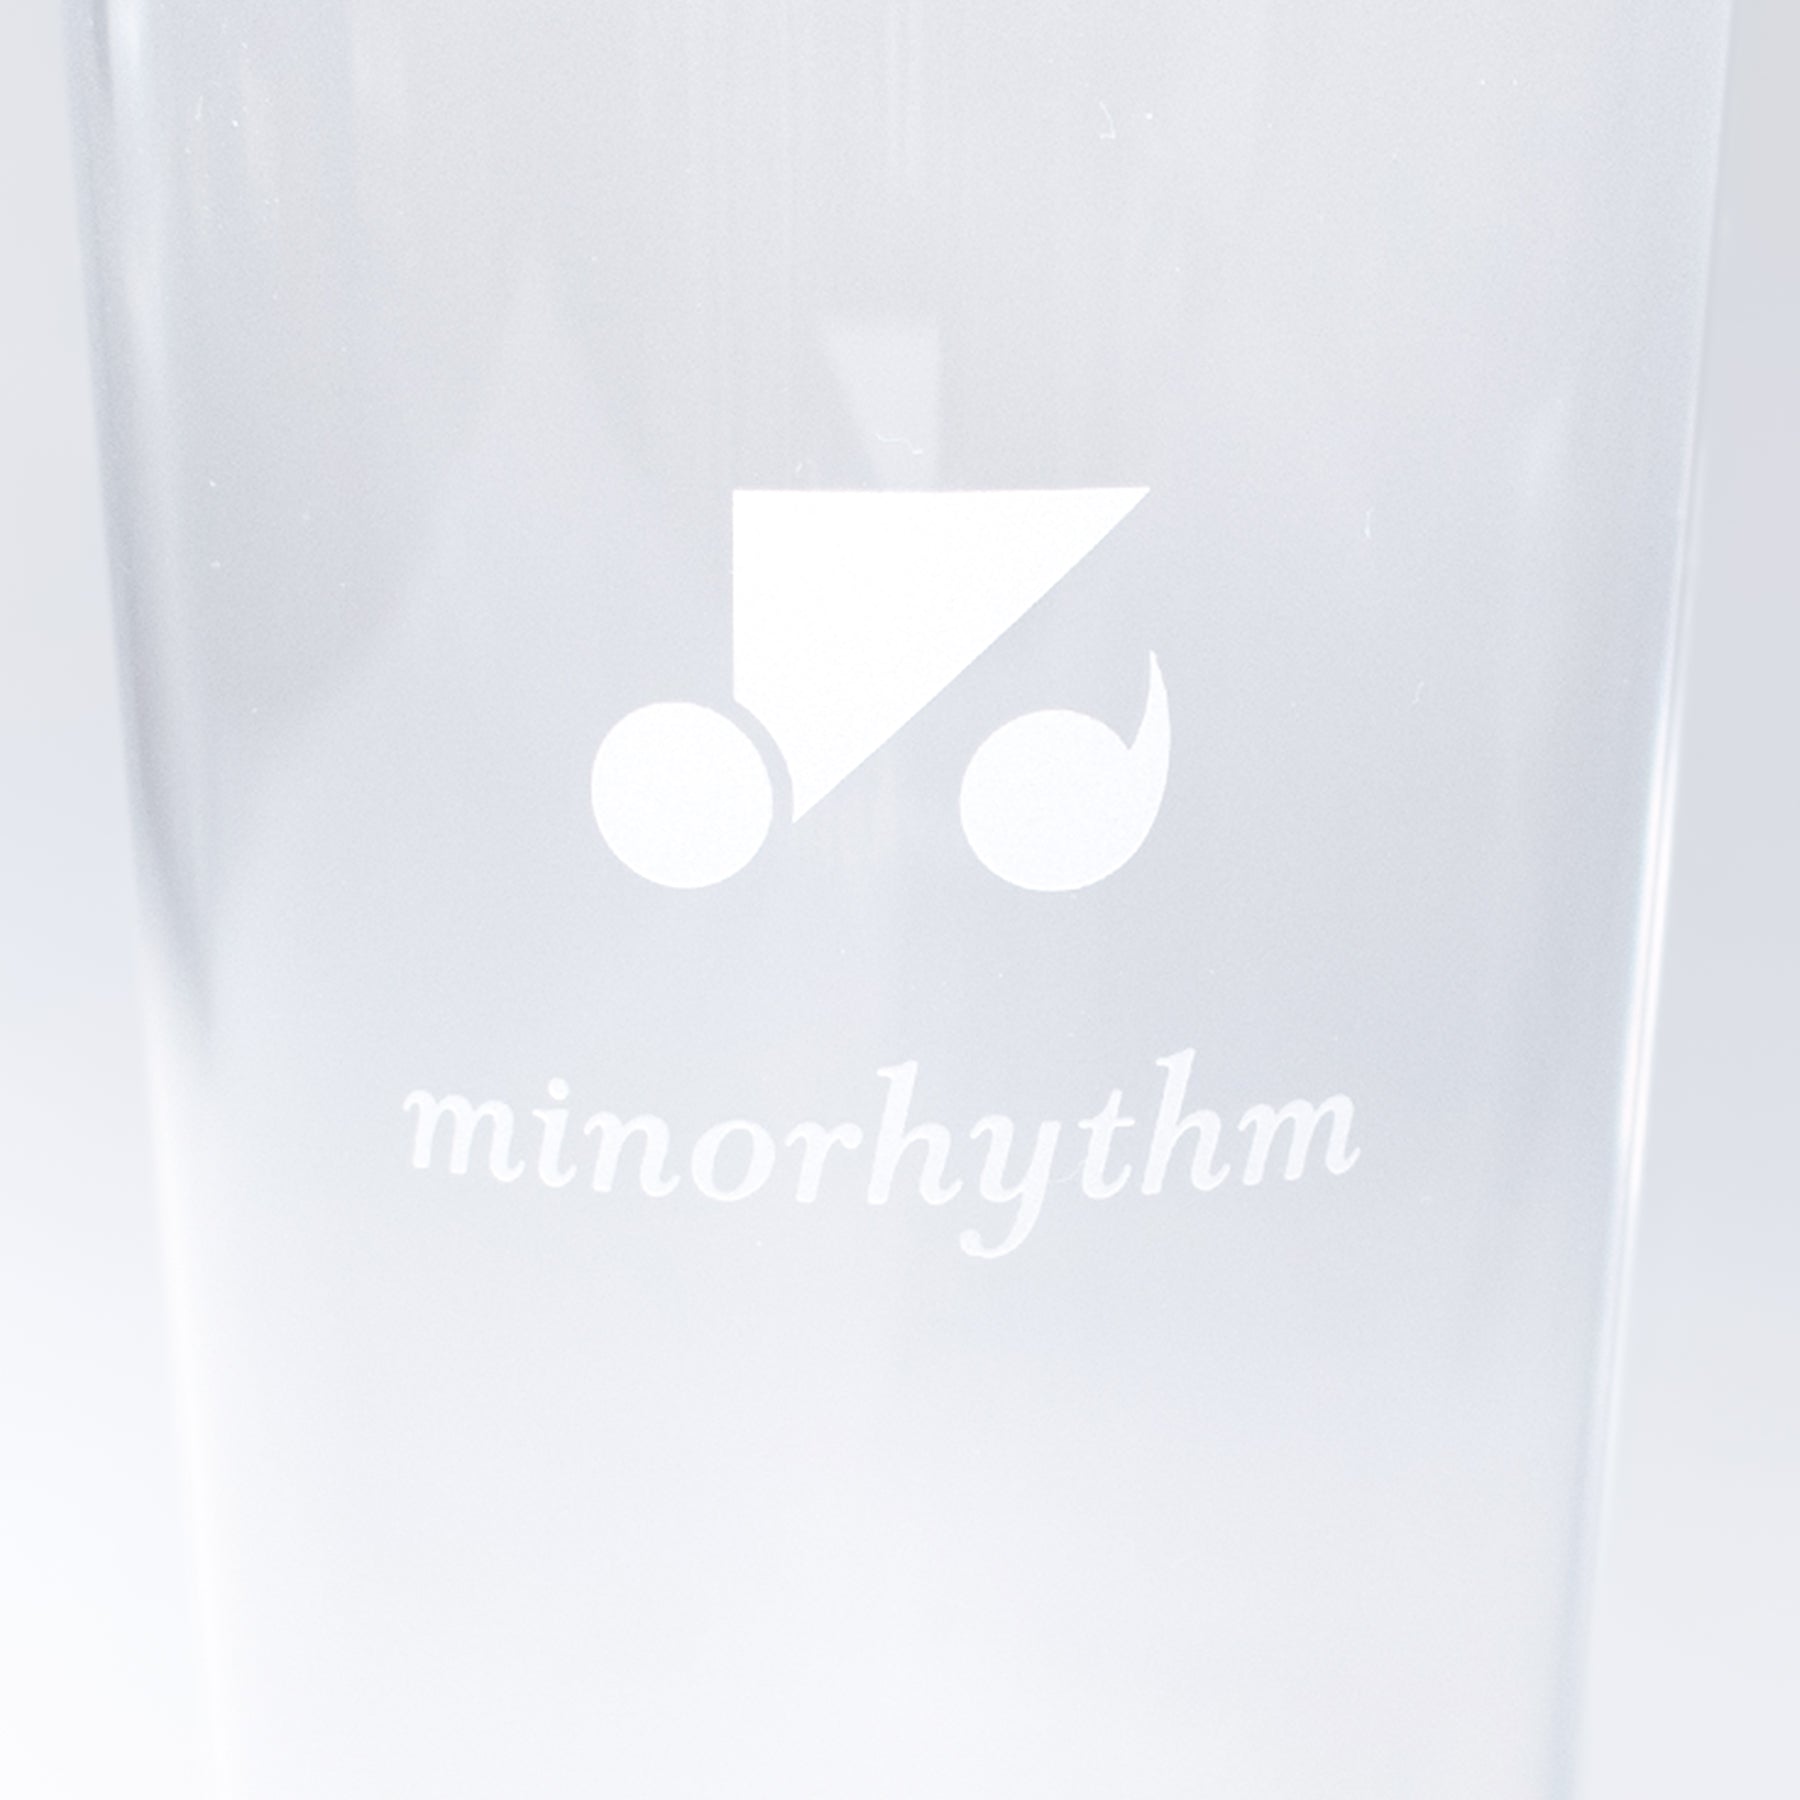 ミノリズムの乾杯グラス